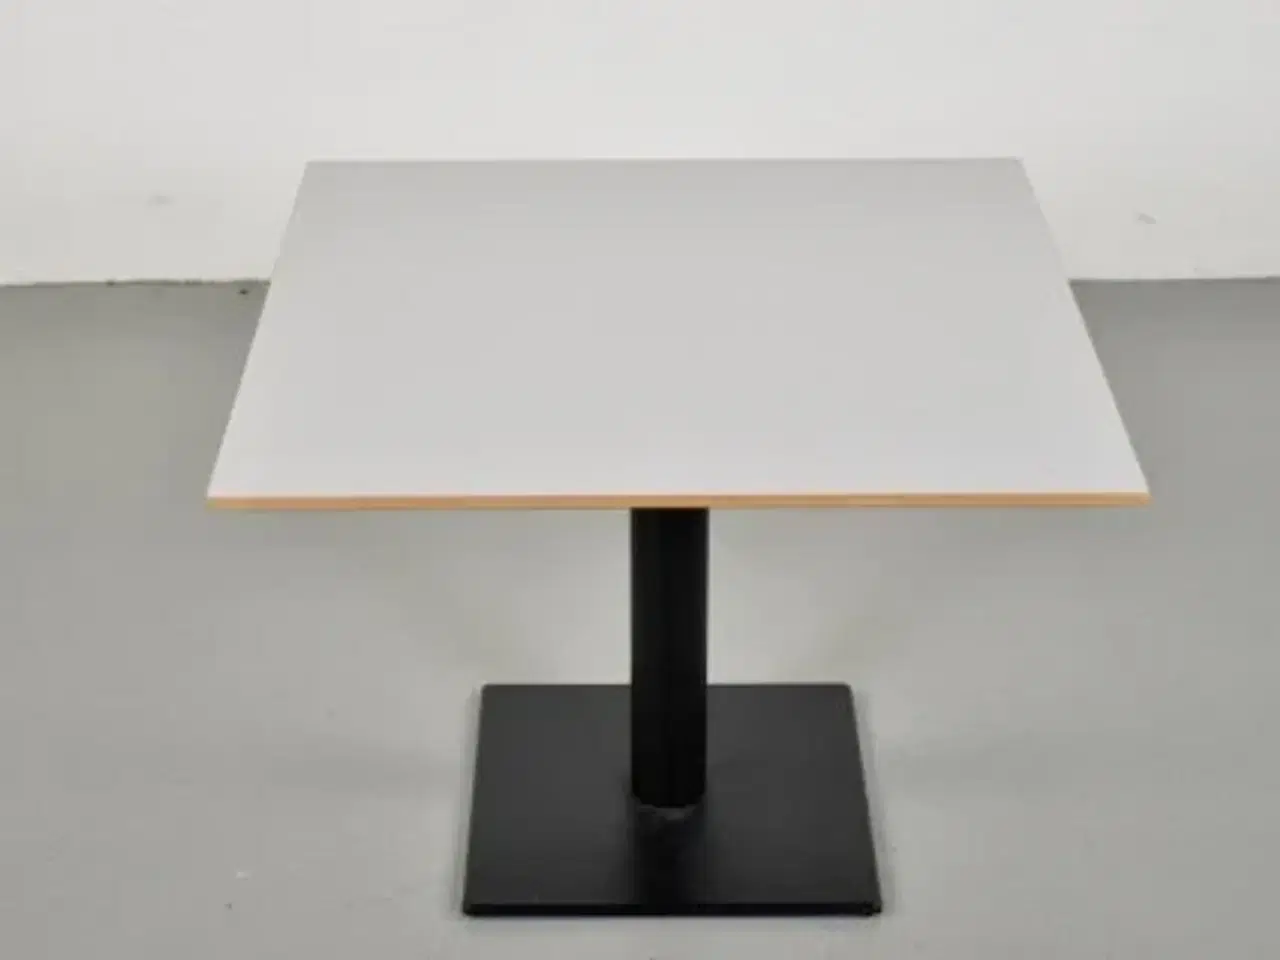 Billede 4 - Lavt cafebord fra zeta furniture med lysegrå plade og sort fod.